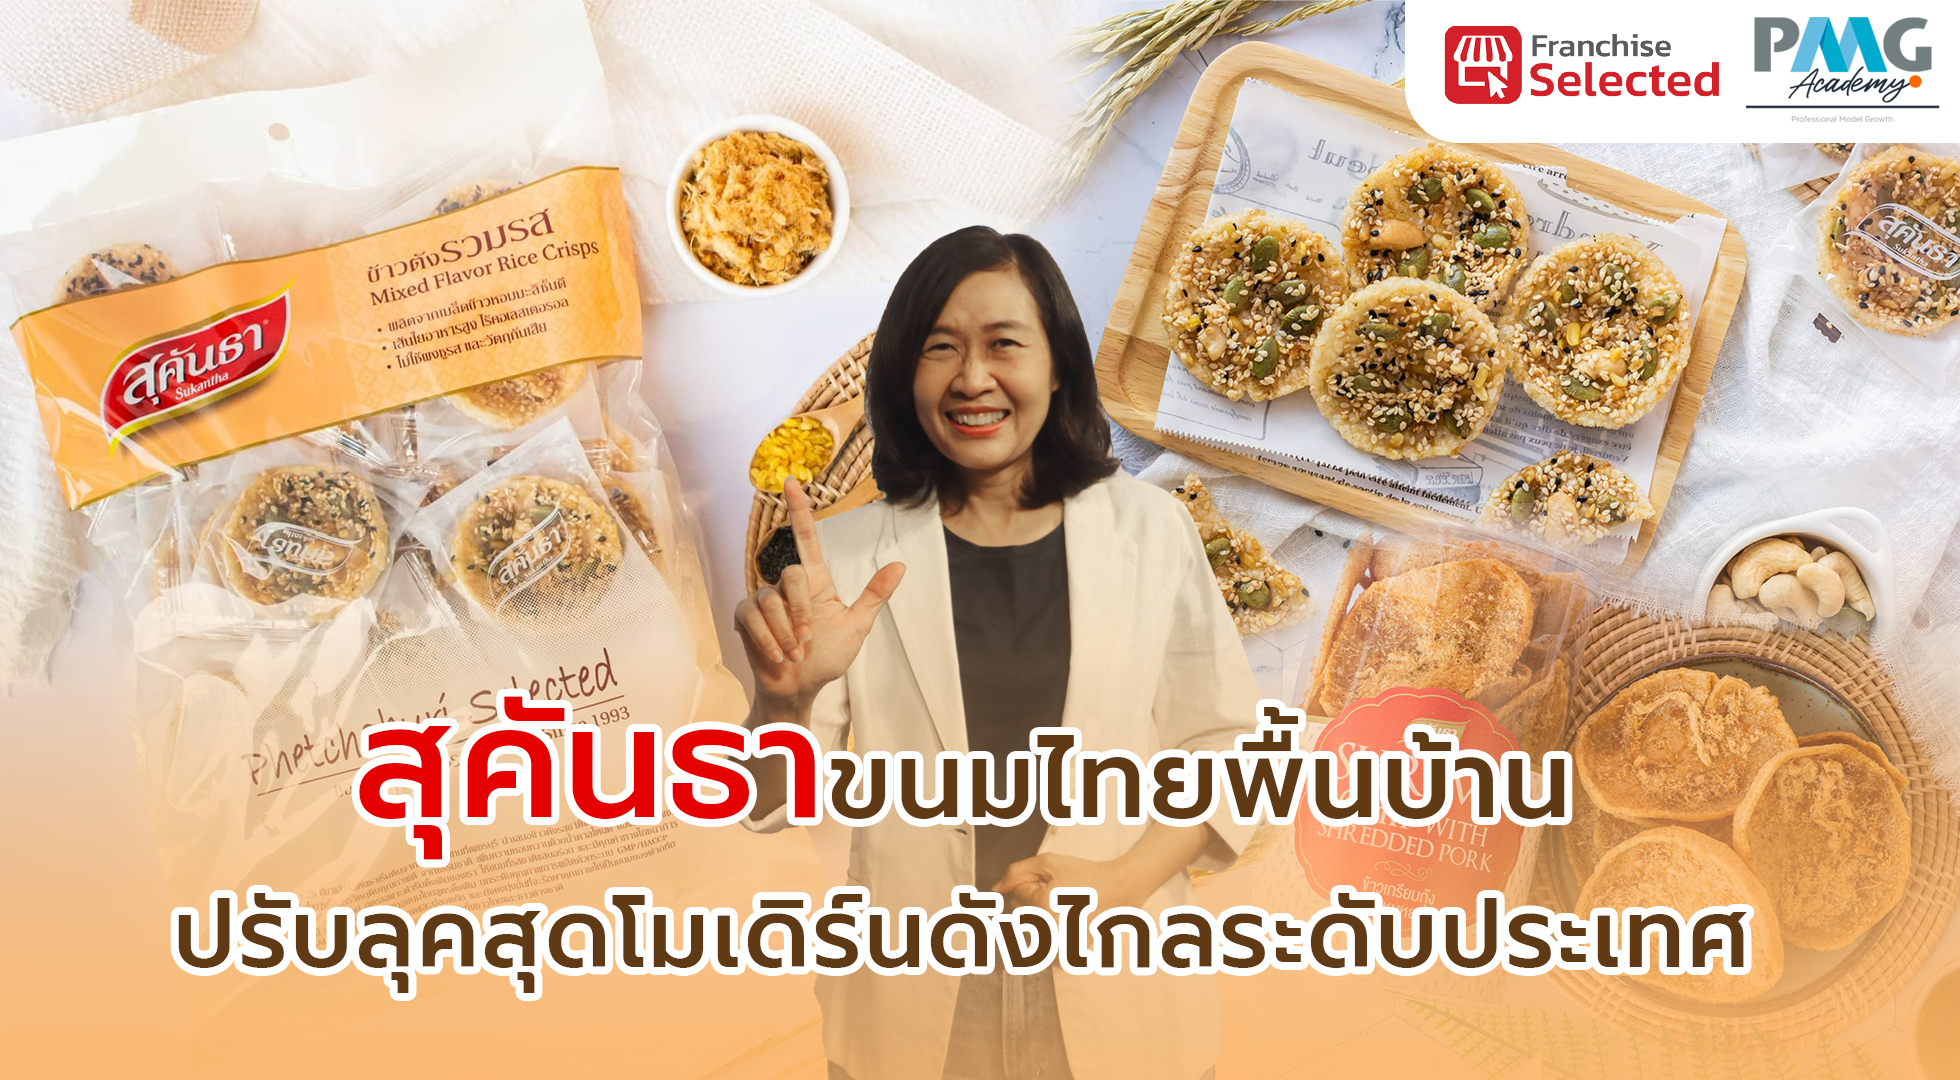 สุคันธา ขนมไทยพื้นบ้านปรับลุคสุดโมเดิร์นดังไกลระดับประเทศ